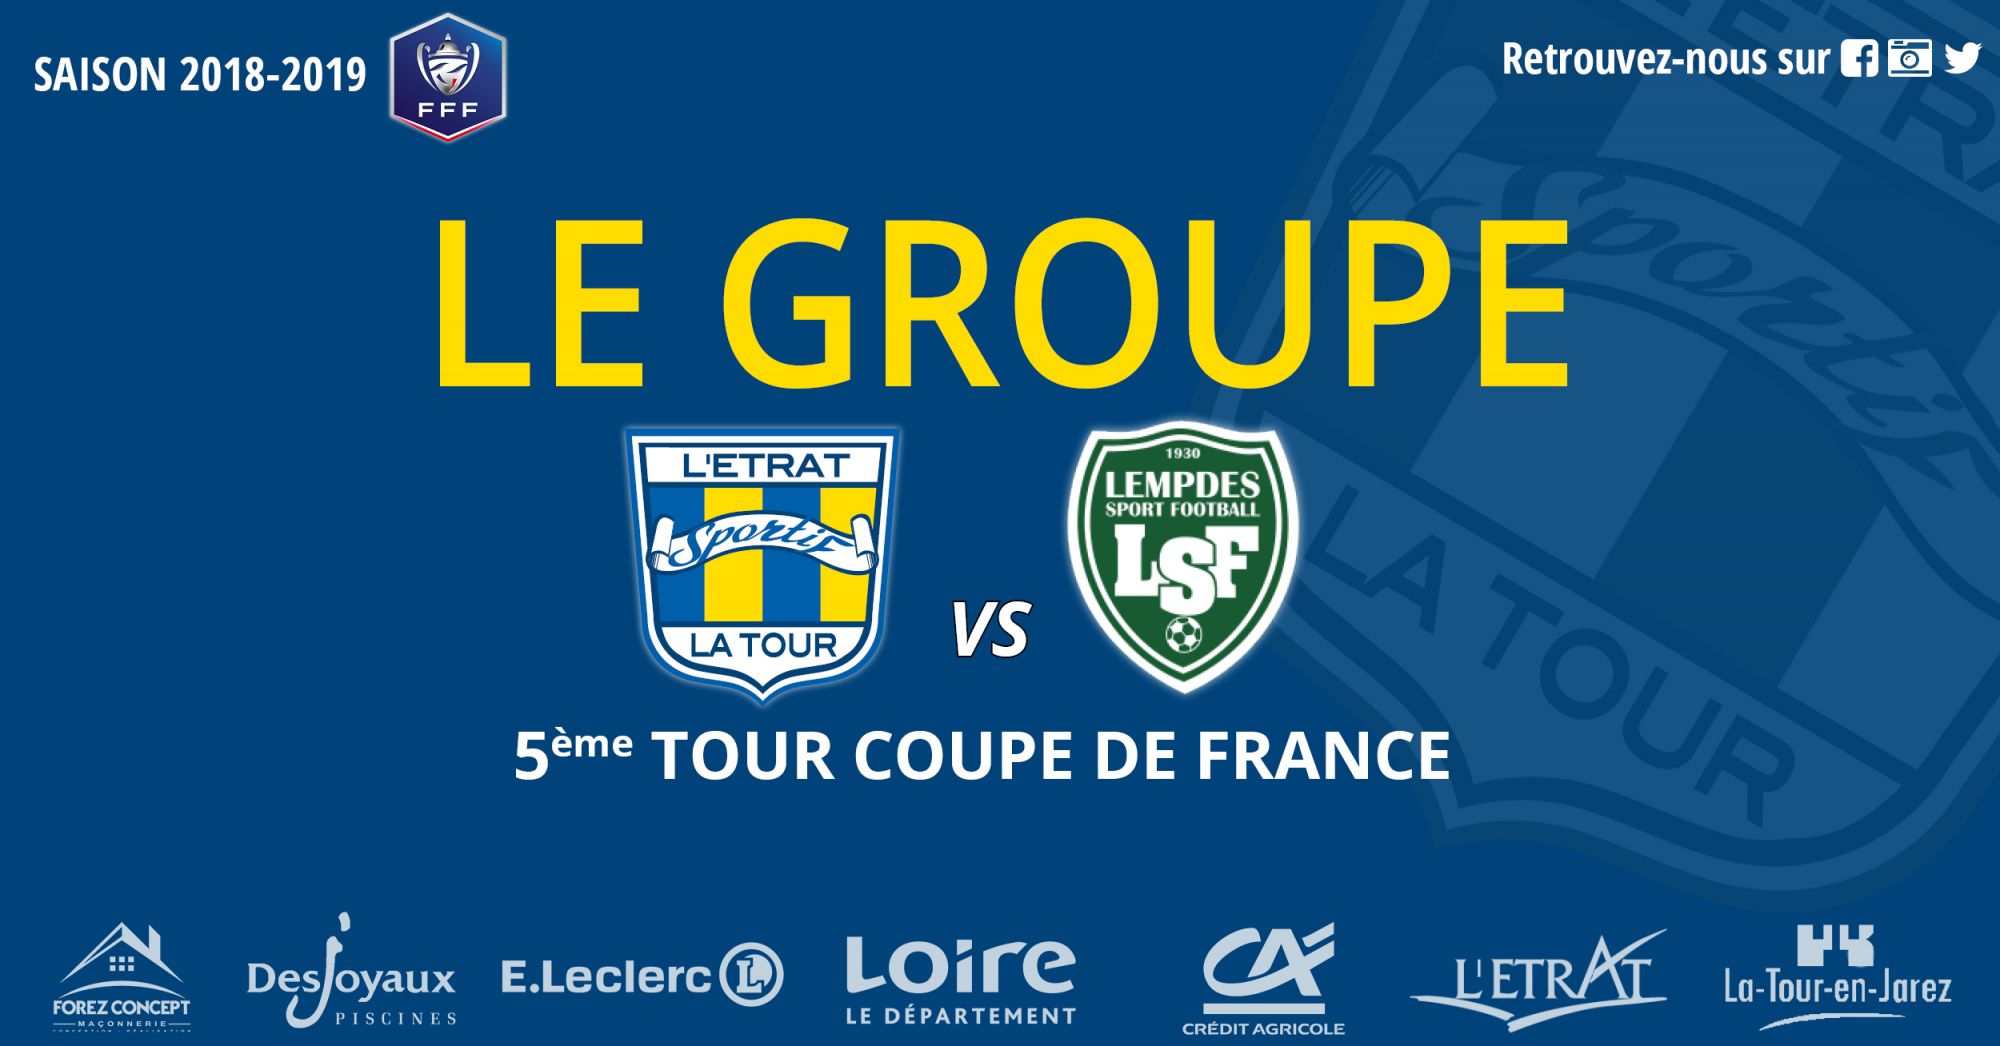 5Ã¨me tour de Coupe de France L'Etrat vs Lempdes :  Le GROUPE